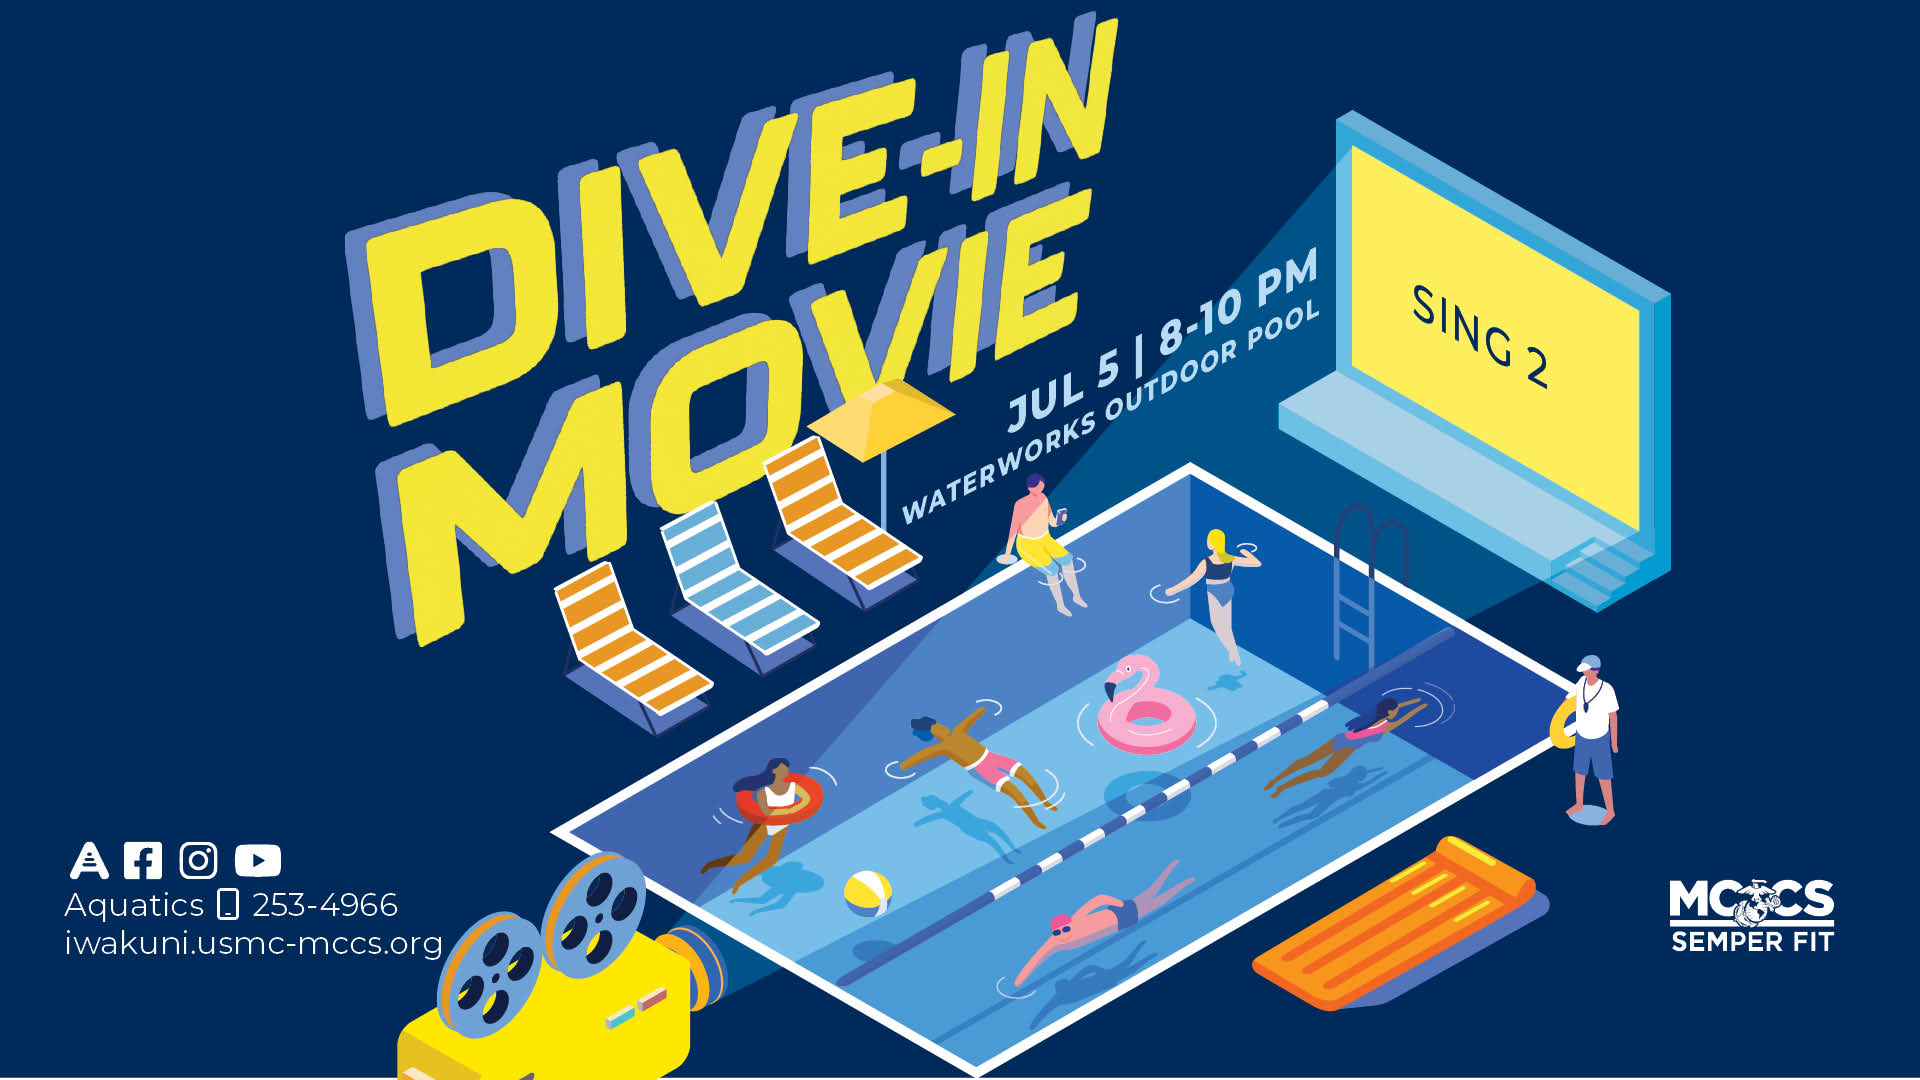 Summer Dive-In Movie - Sing 2